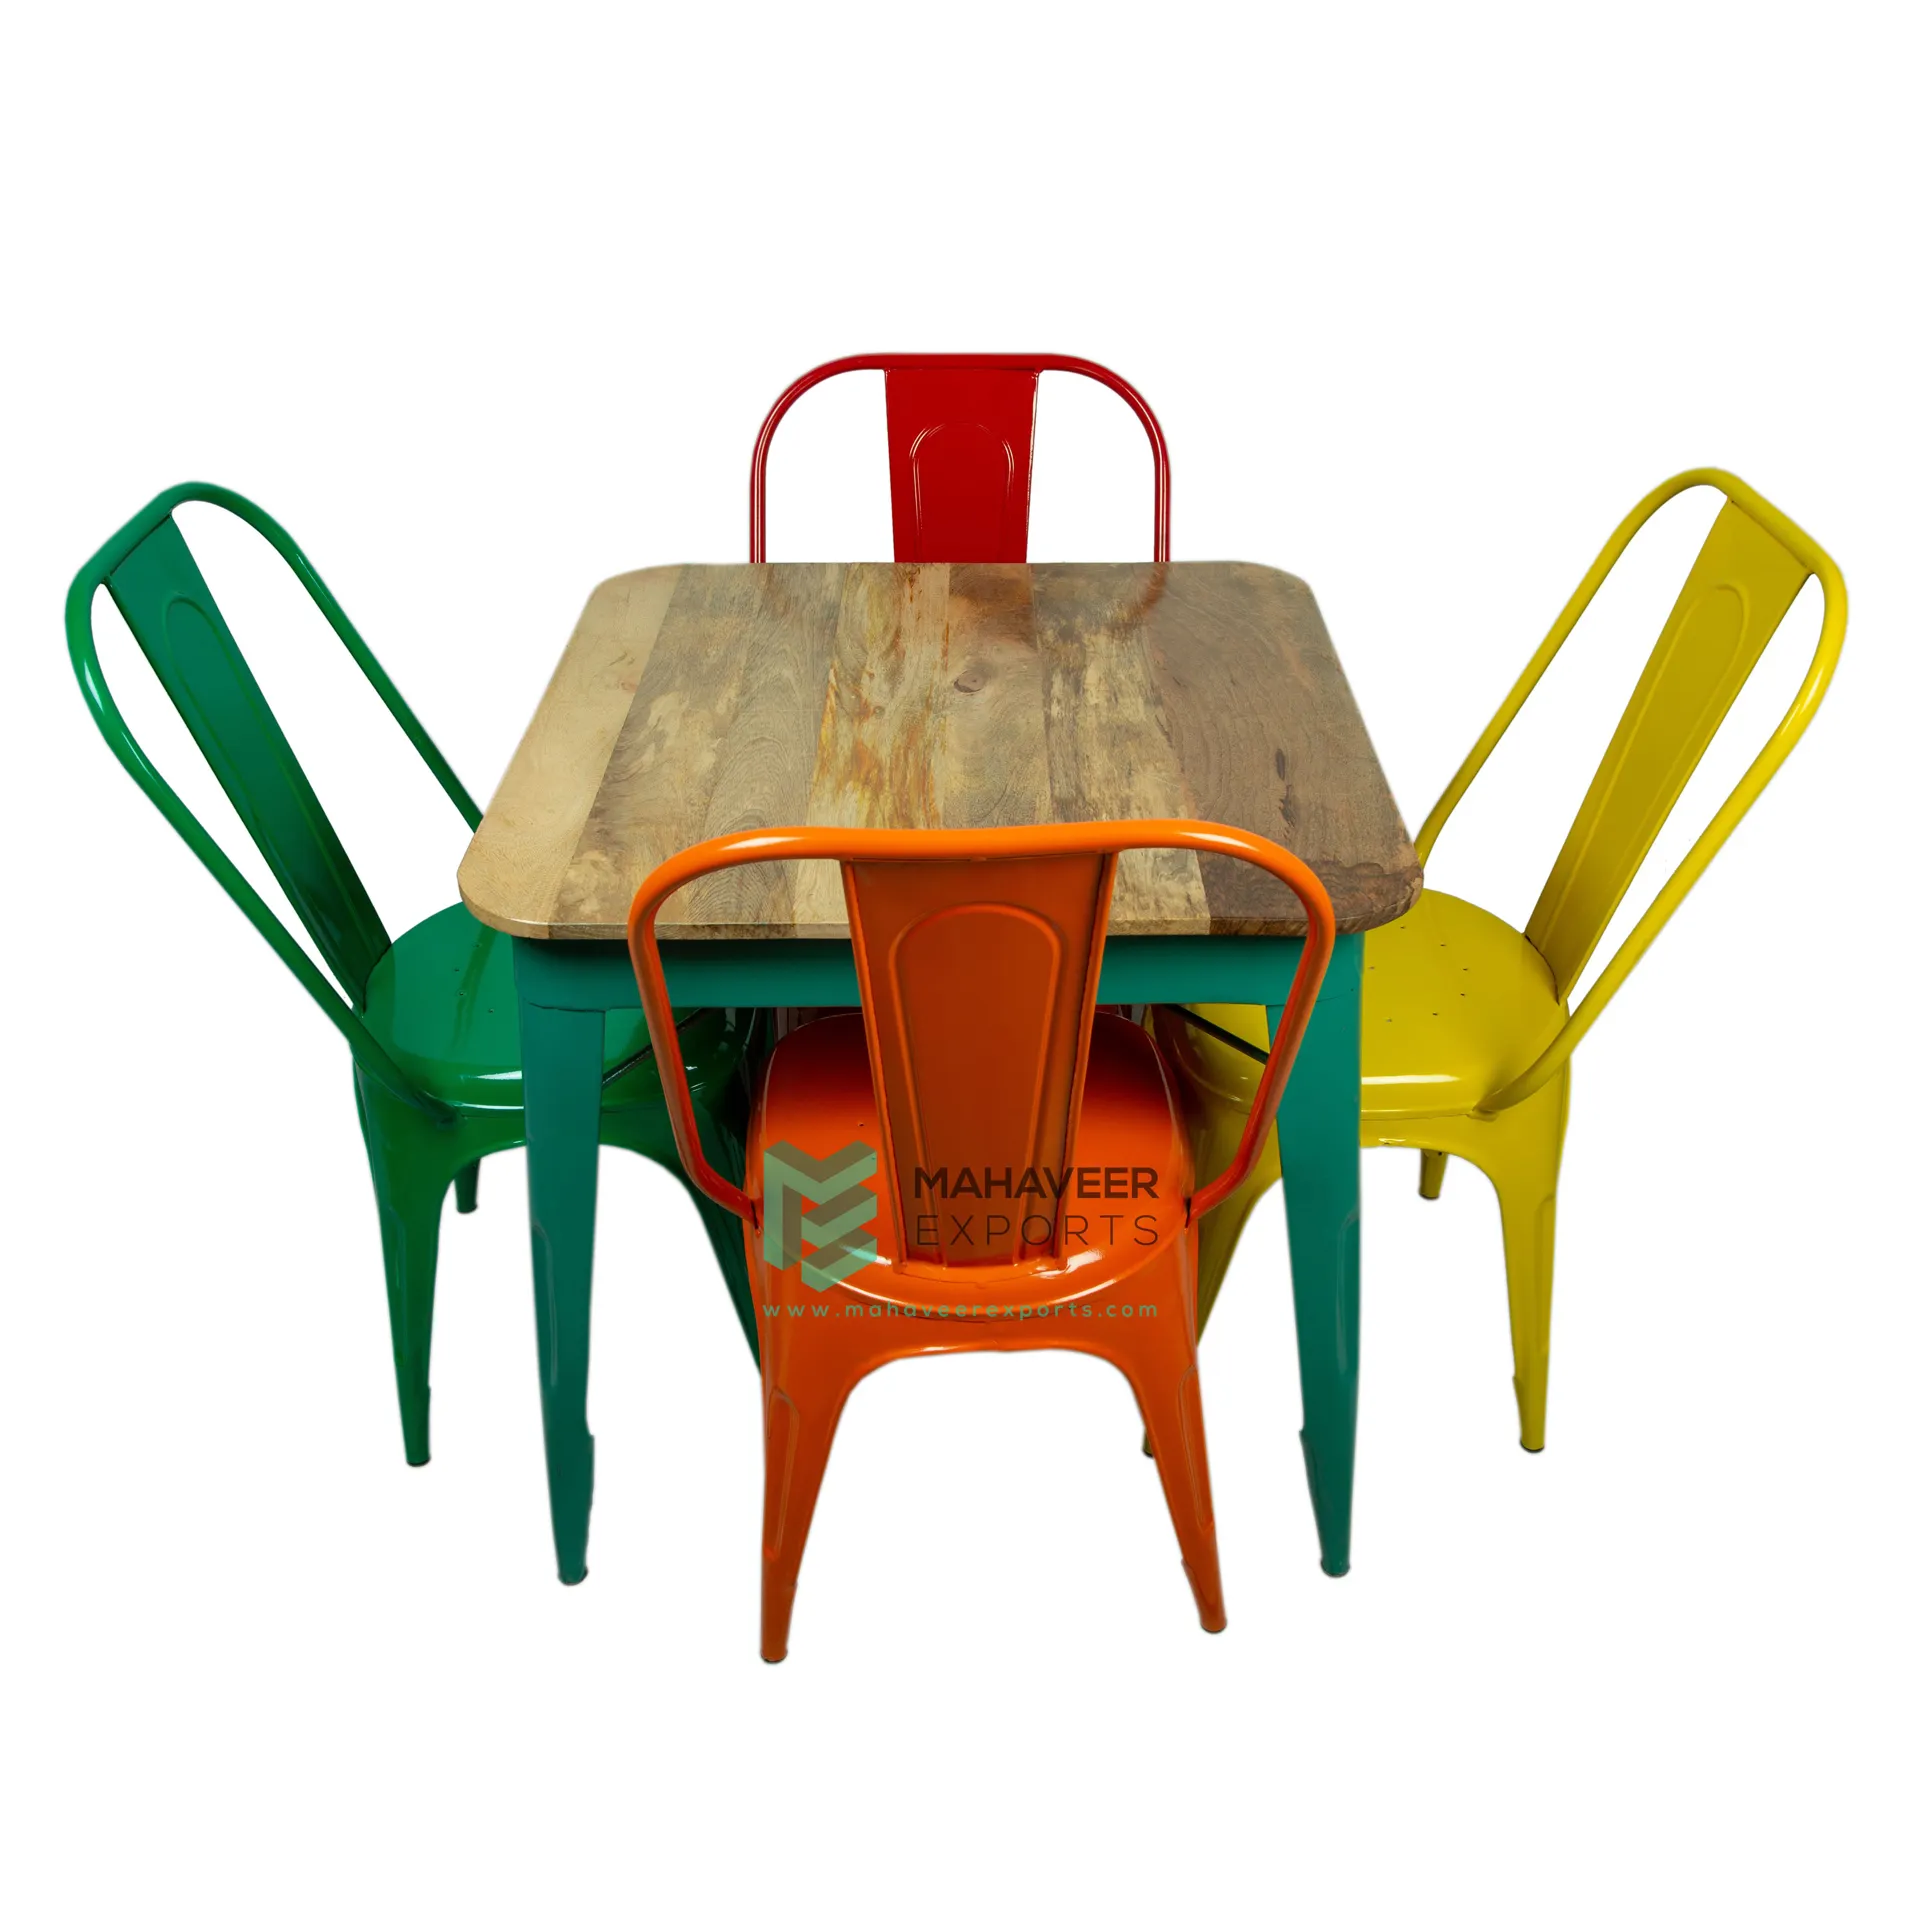 ชุดโต๊ะรับประทานอาหารในร่ม-กลางแจ้ง,โต๊ะไม้สี่เหลี่ยมสไตล์ร้านอาหารพร้อมเก้าอี้สแต็ค4ตัวในสีเหลือง/เขียว/ส้ม/แดง